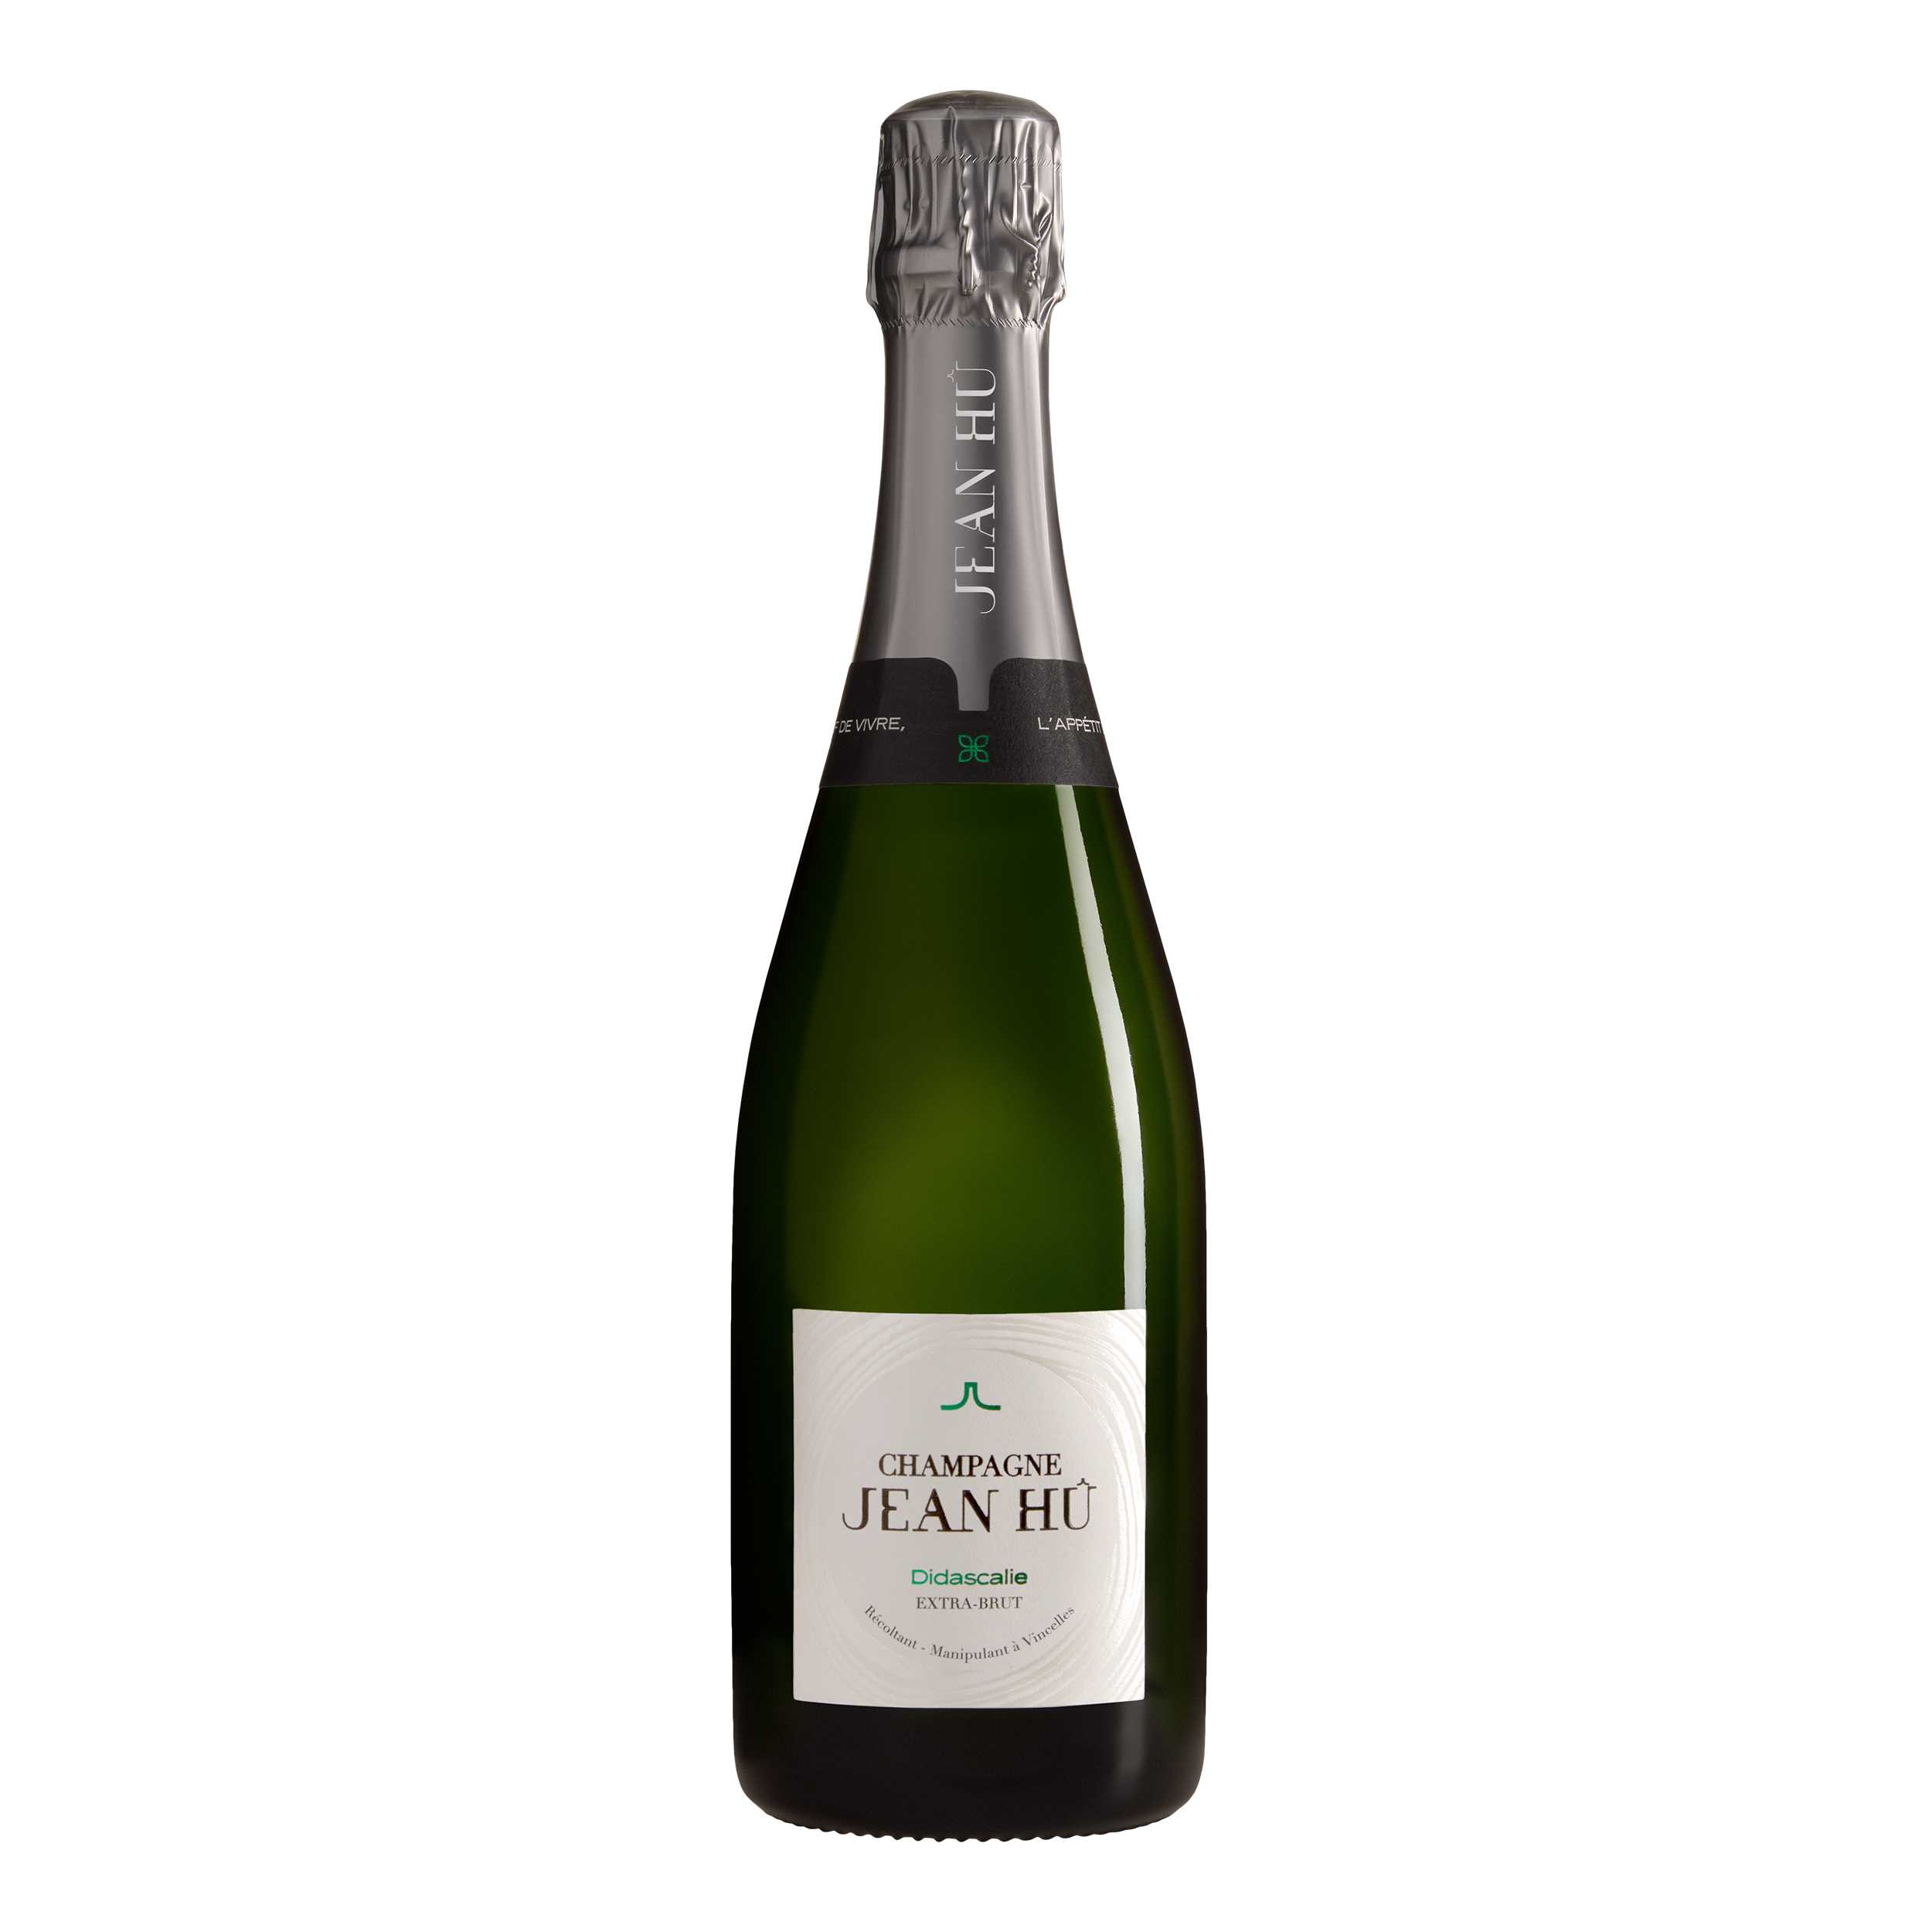 Champagne Jean Hû - Didascalie Extra-brut | Champagne de la Vallée de la Marne